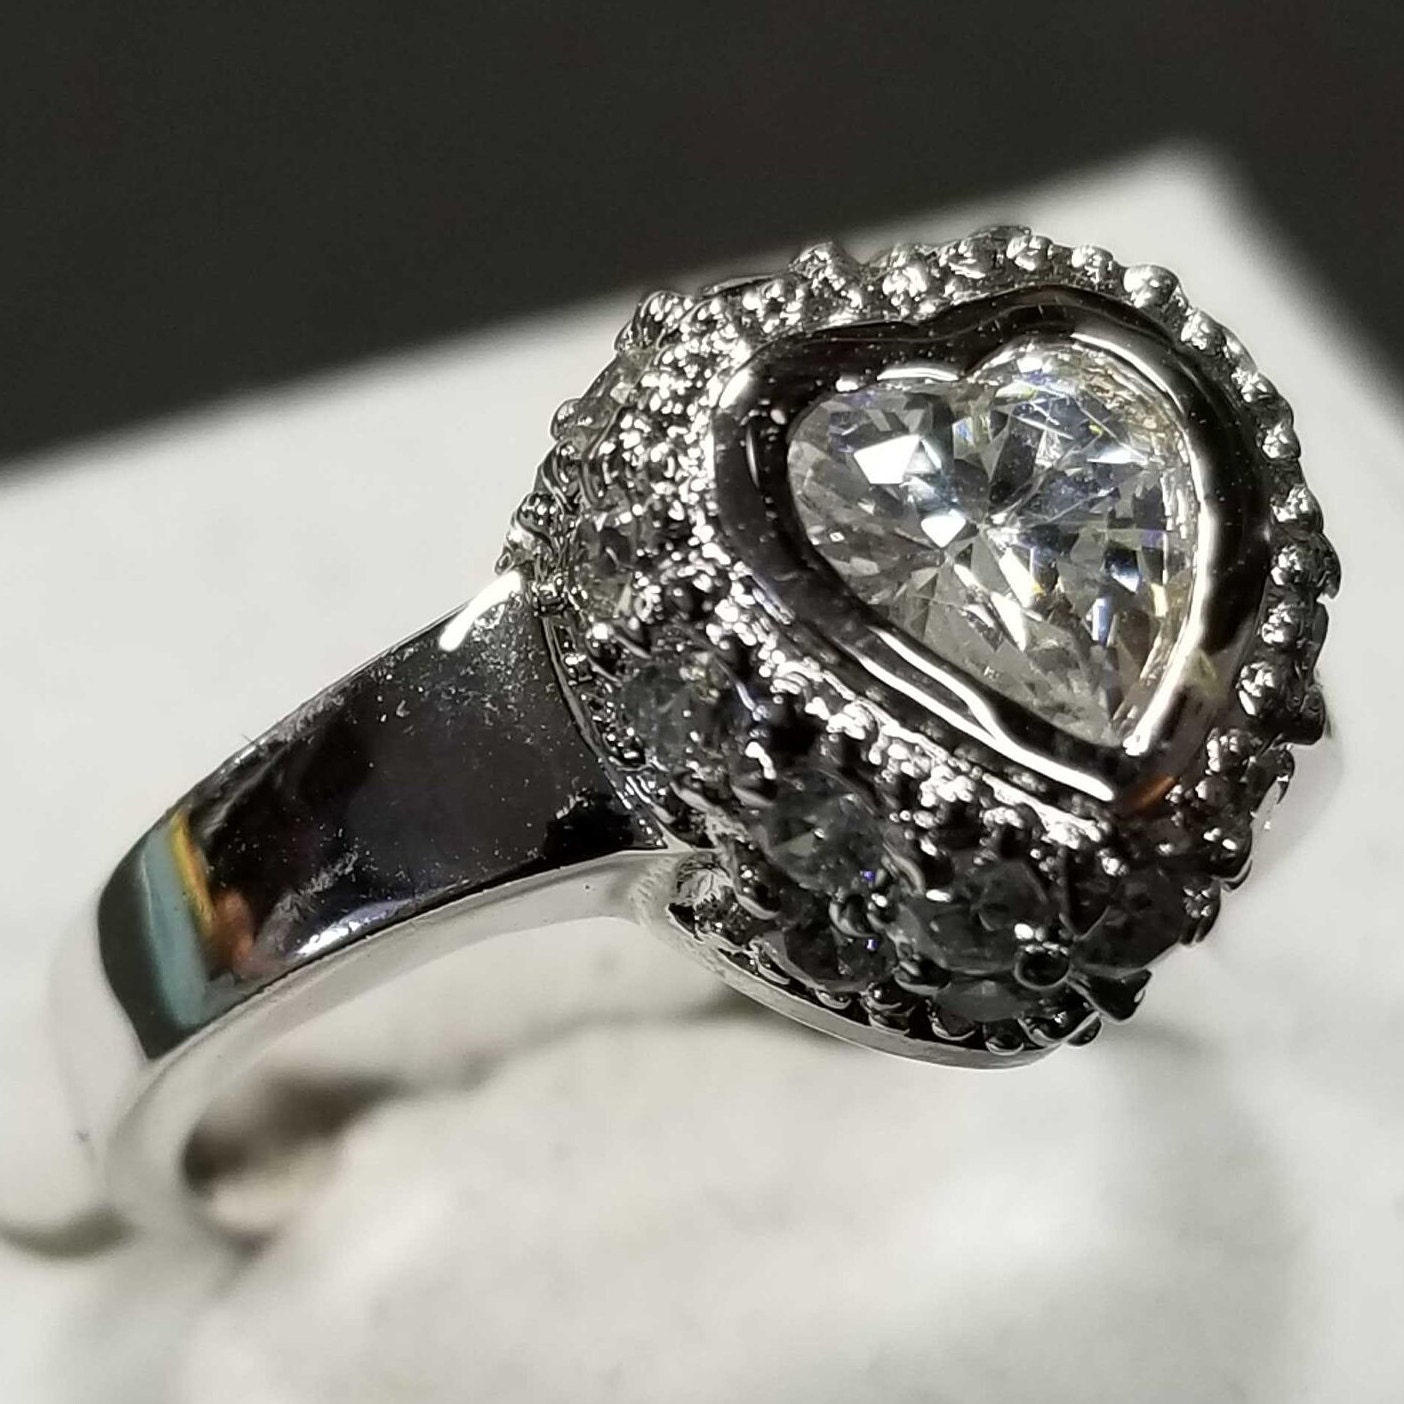 Größe 7 Sterling Silber Weiß Cz Herz Ring Vintage Schmuck April Birthstone Diamant 925 Rhodium Plated von BlueMoonTrader